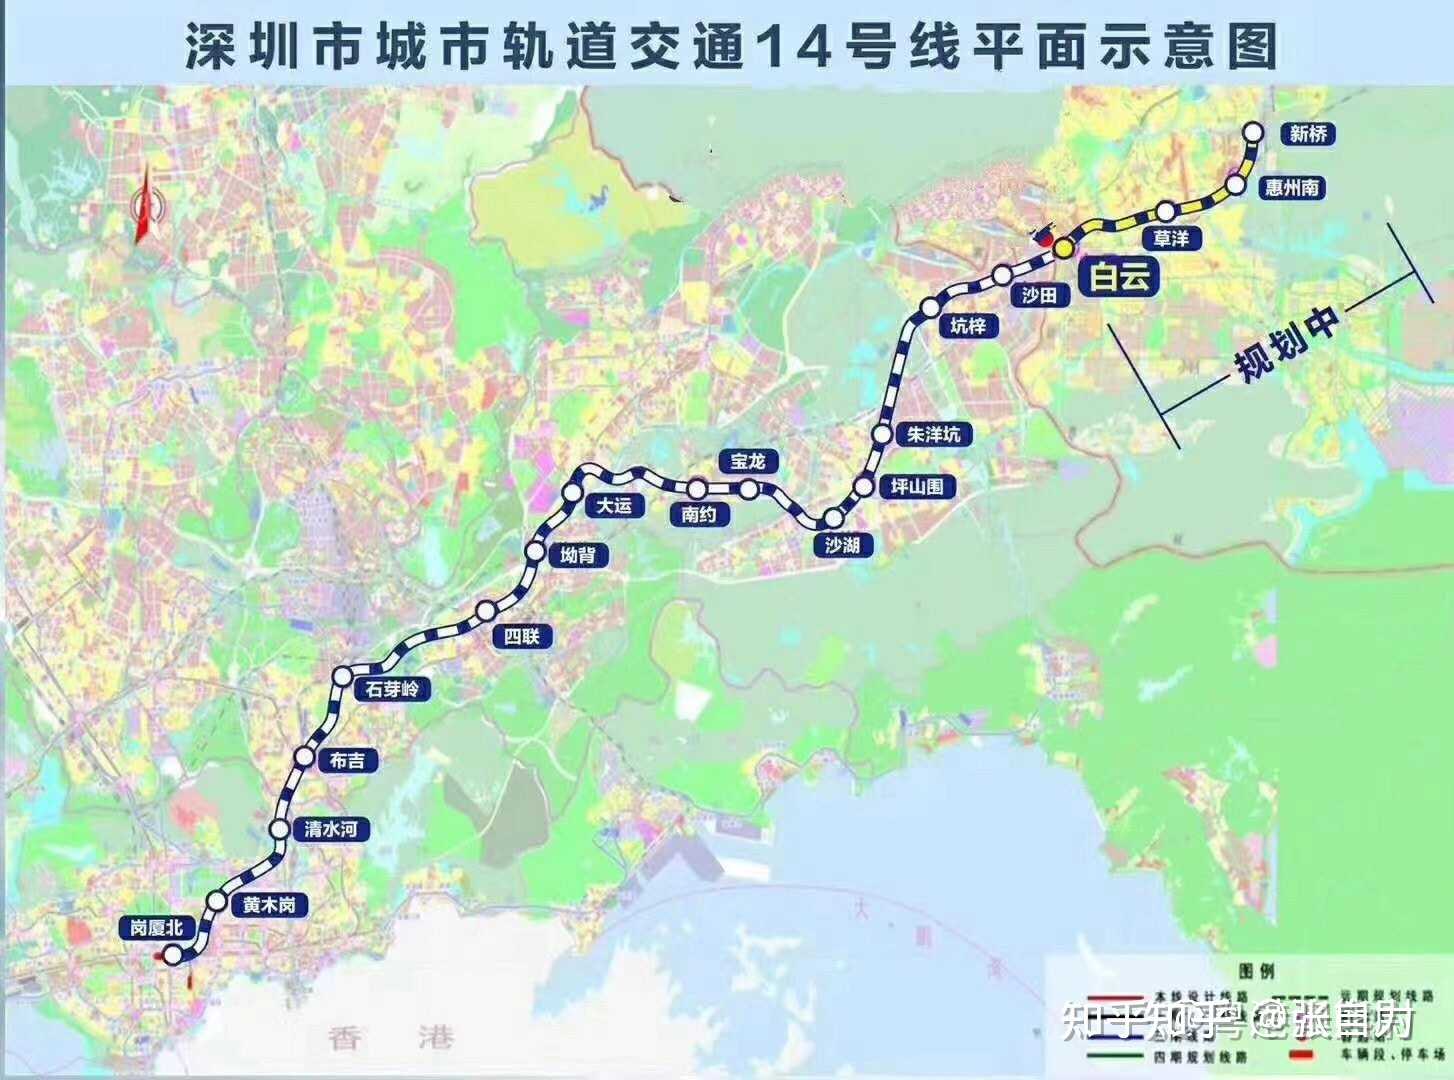 张自力 的想法: 深圳地铁14号线惠州段已确定实施,并纳入… 